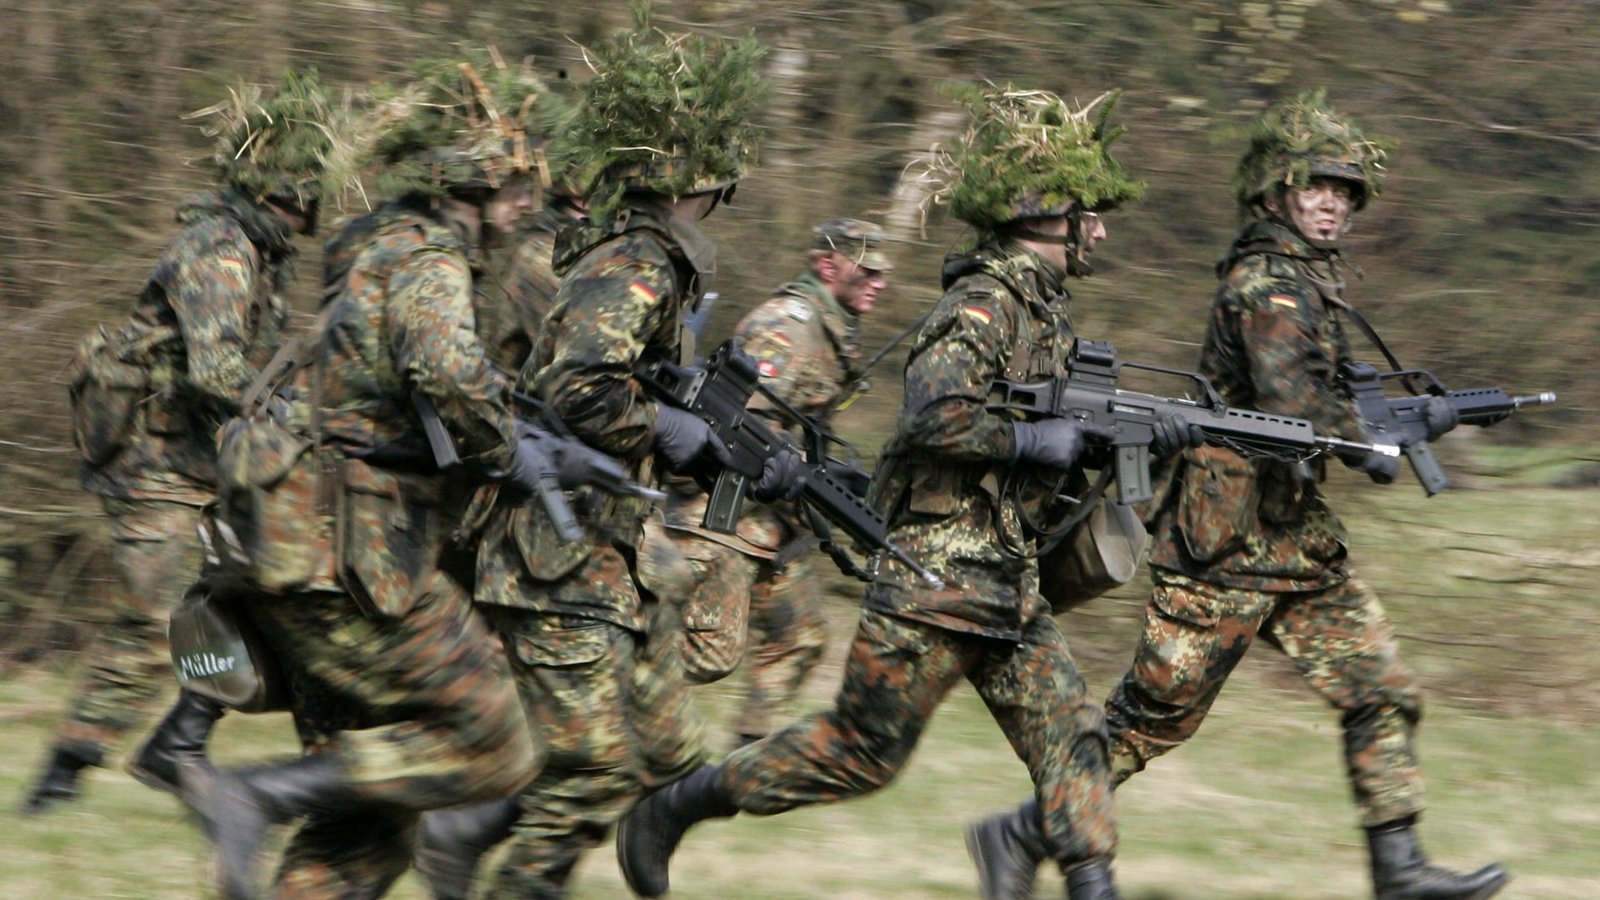 Weil die Bundeswehr unter großem Personalmangel leidet, fordert die CDU eine sogenannte Kontingentwehrpflicht. (Archivbild)Foto: dpa/Frank May